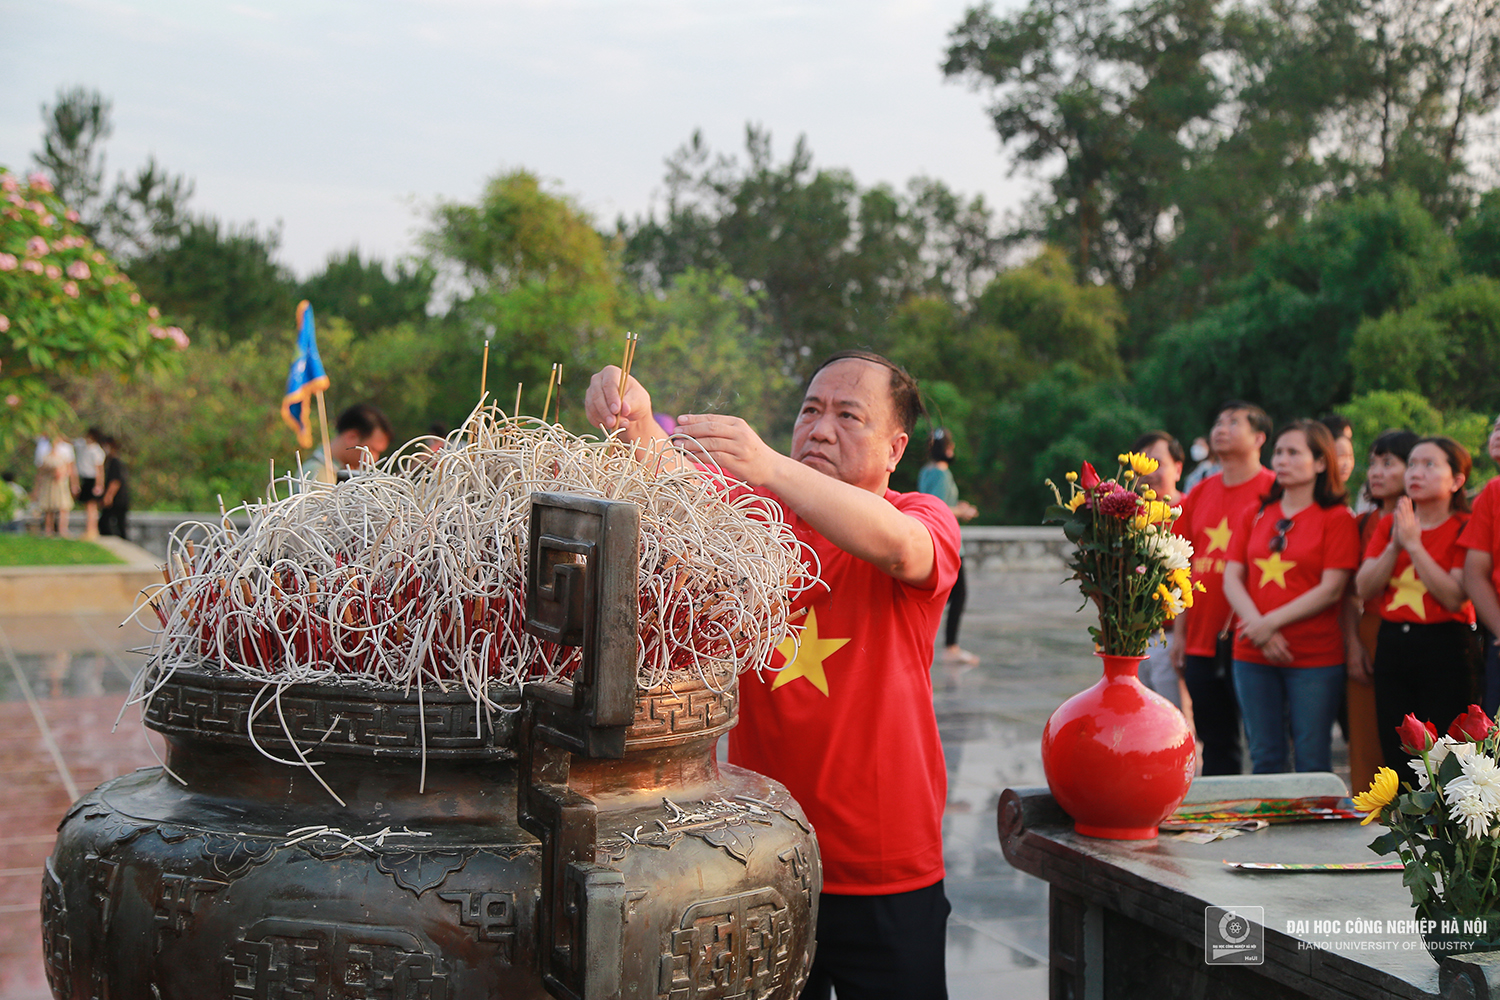 Đoàn công tác Đại học Công nghiệp Hà Nội thăm Điện Biên, Sơn La - vùng Tây Bắc anh hùng!